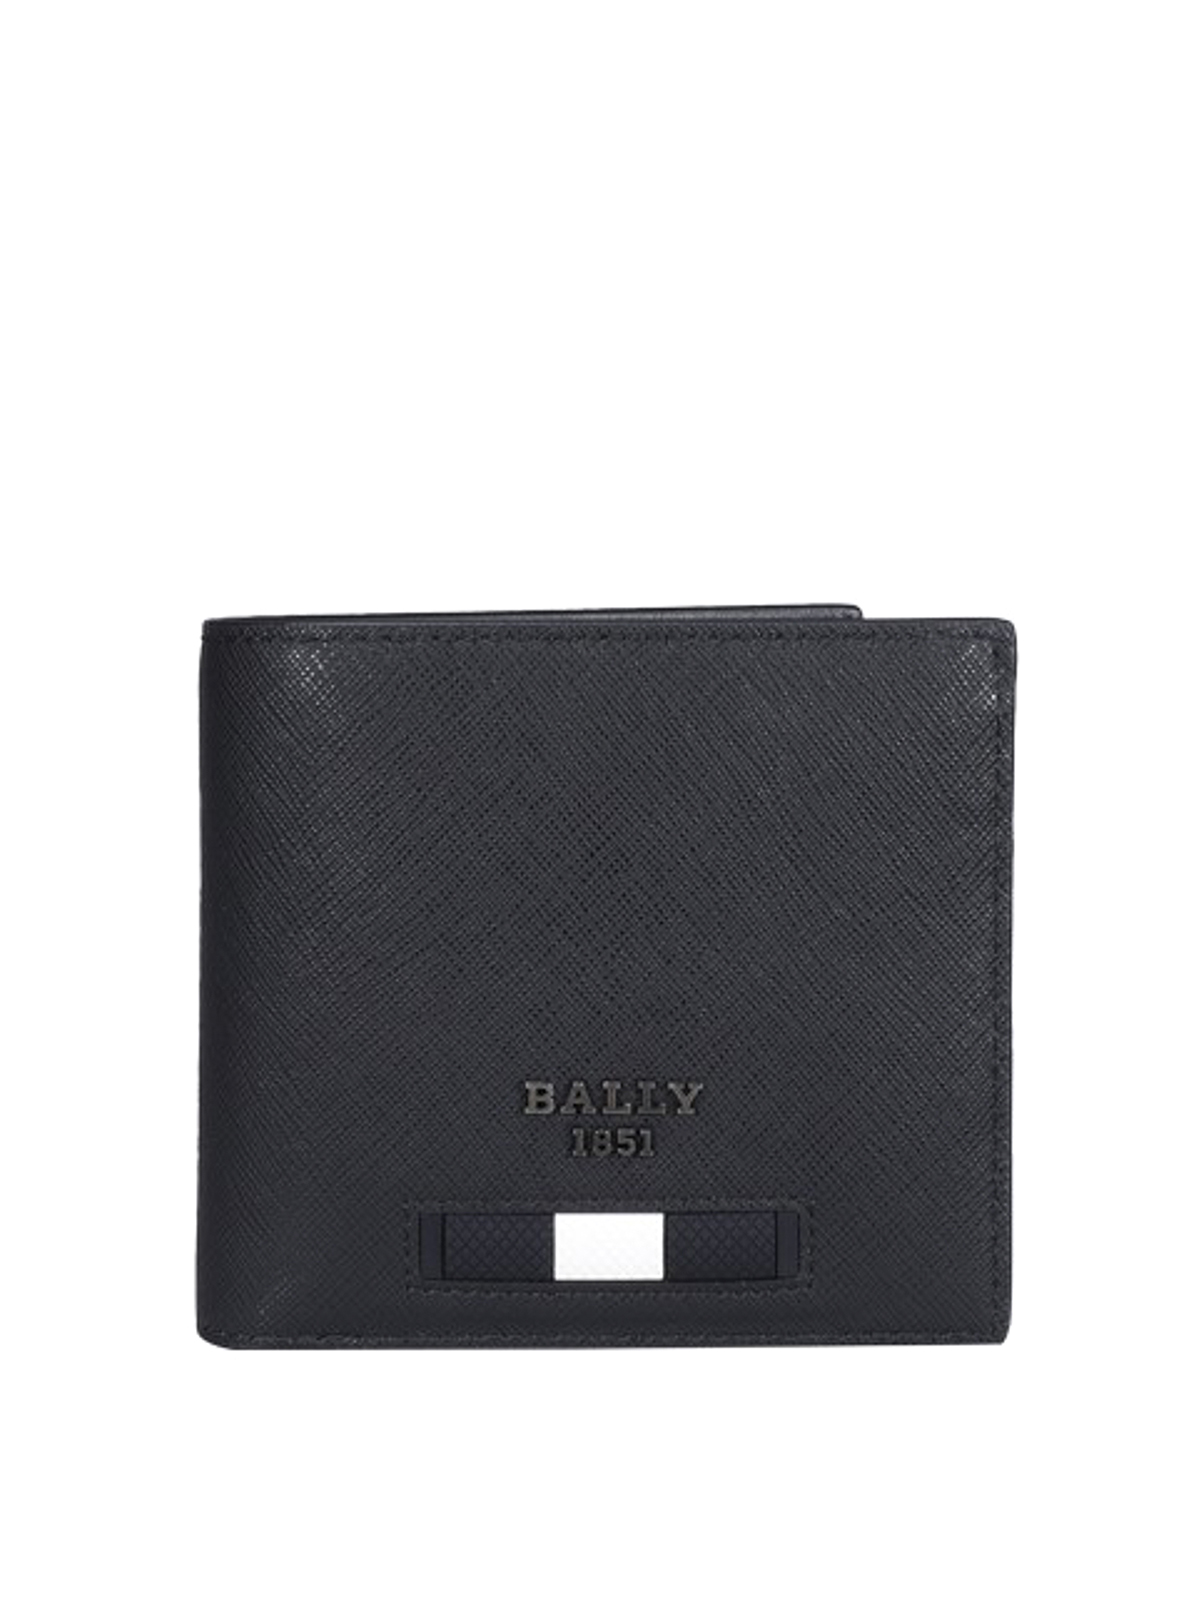 Bally Men's Brasai Leather Wallet In Black